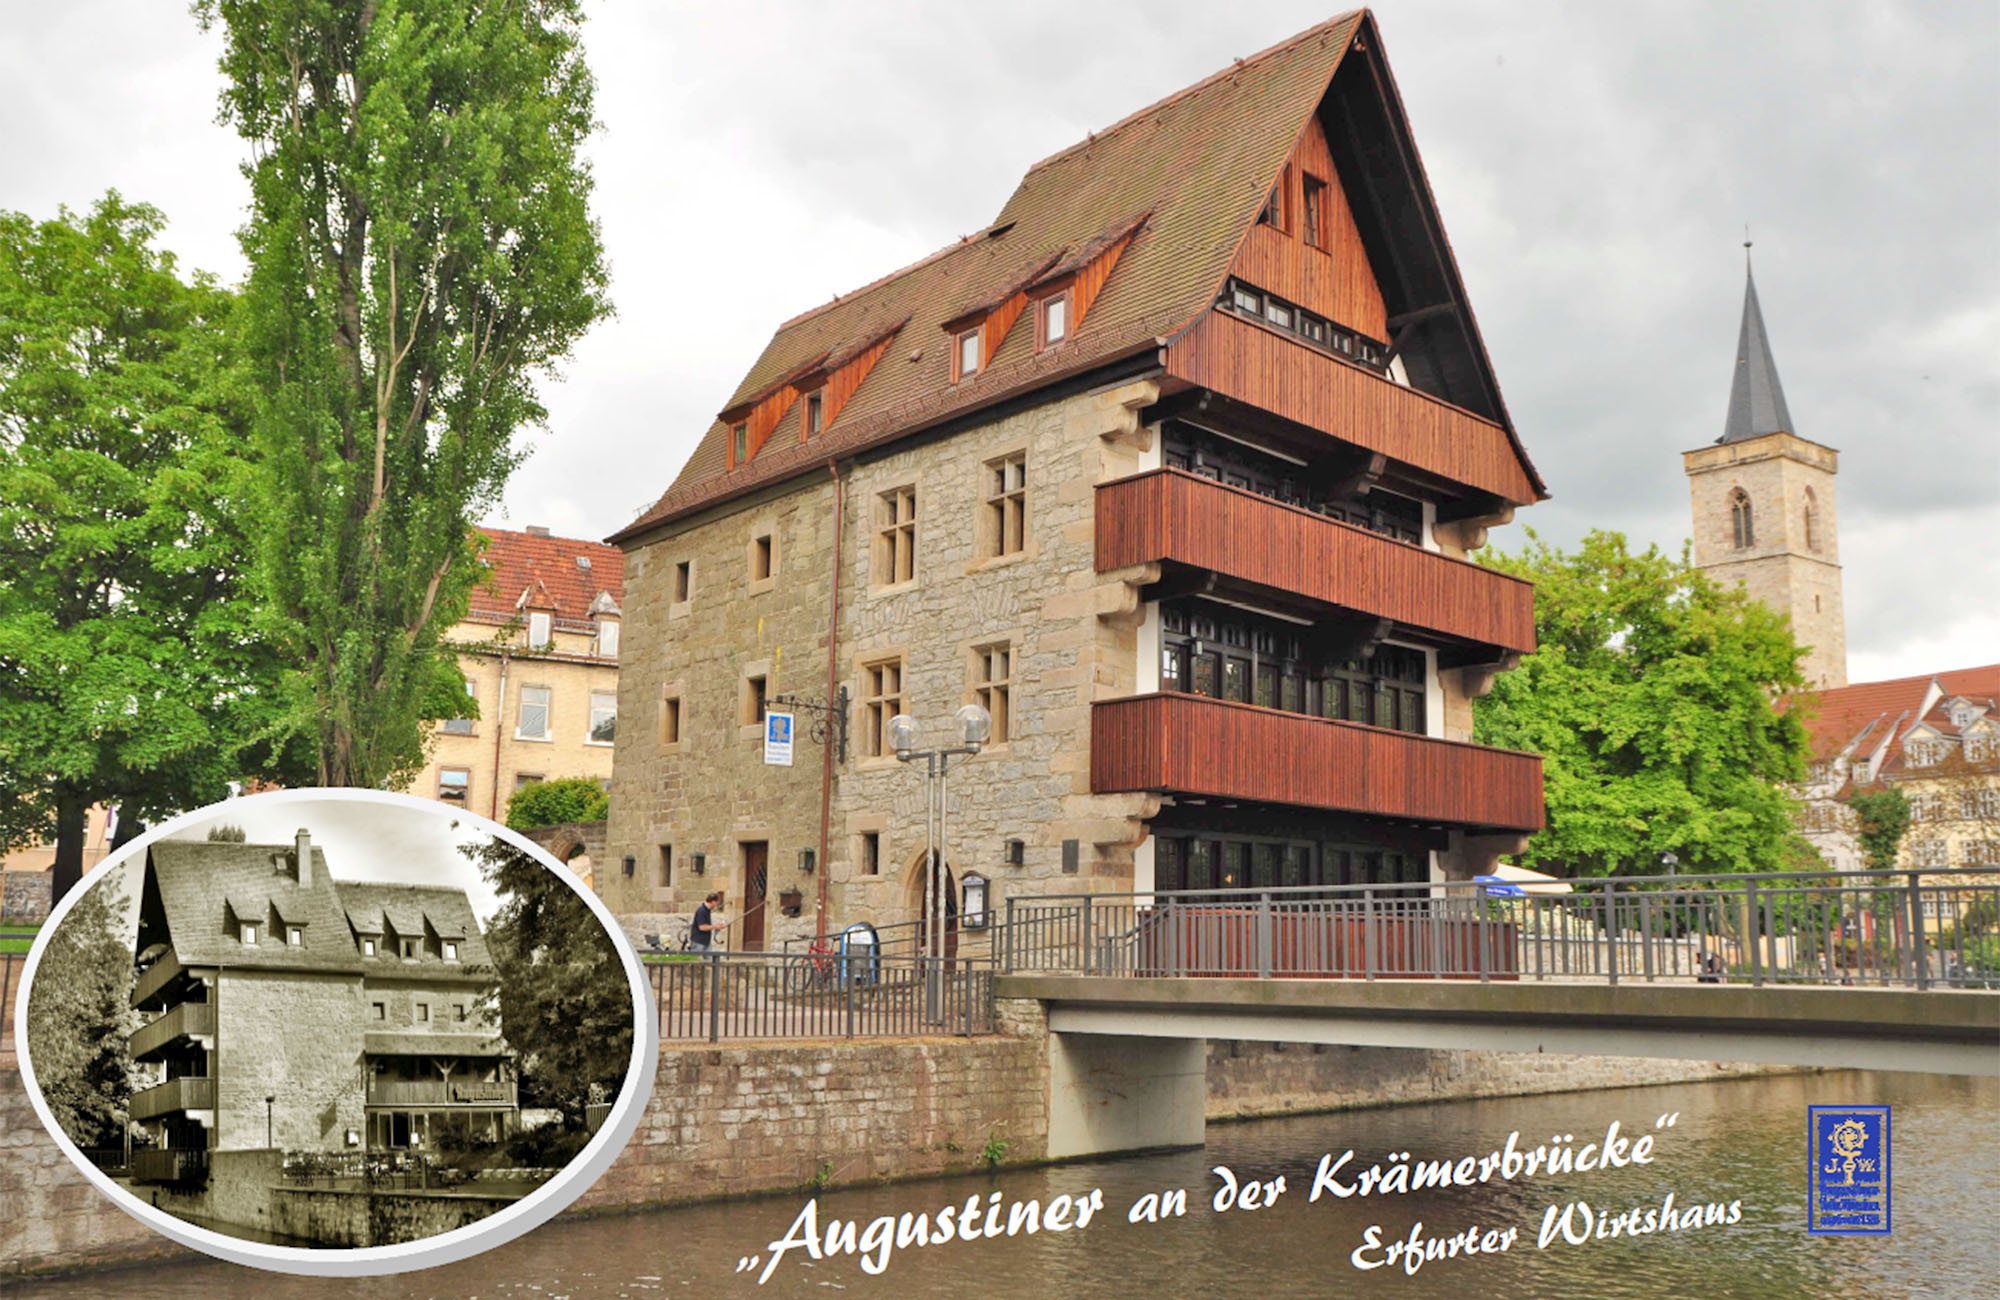 Augustiner an der Krämerbrücke Erfurt